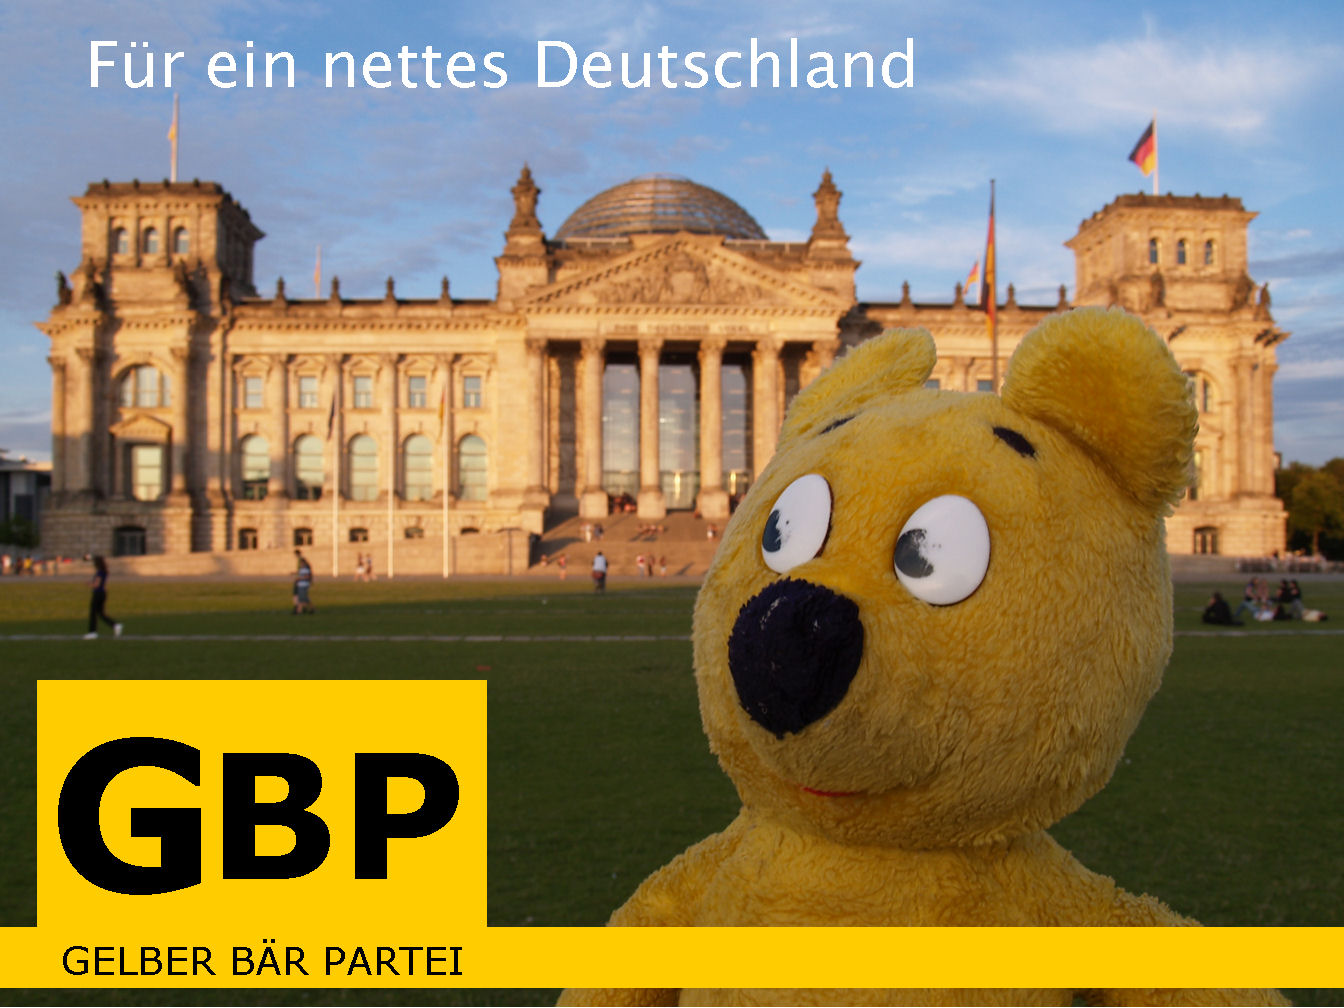 Für ein nettes Deutschland - Der gelbe Bär